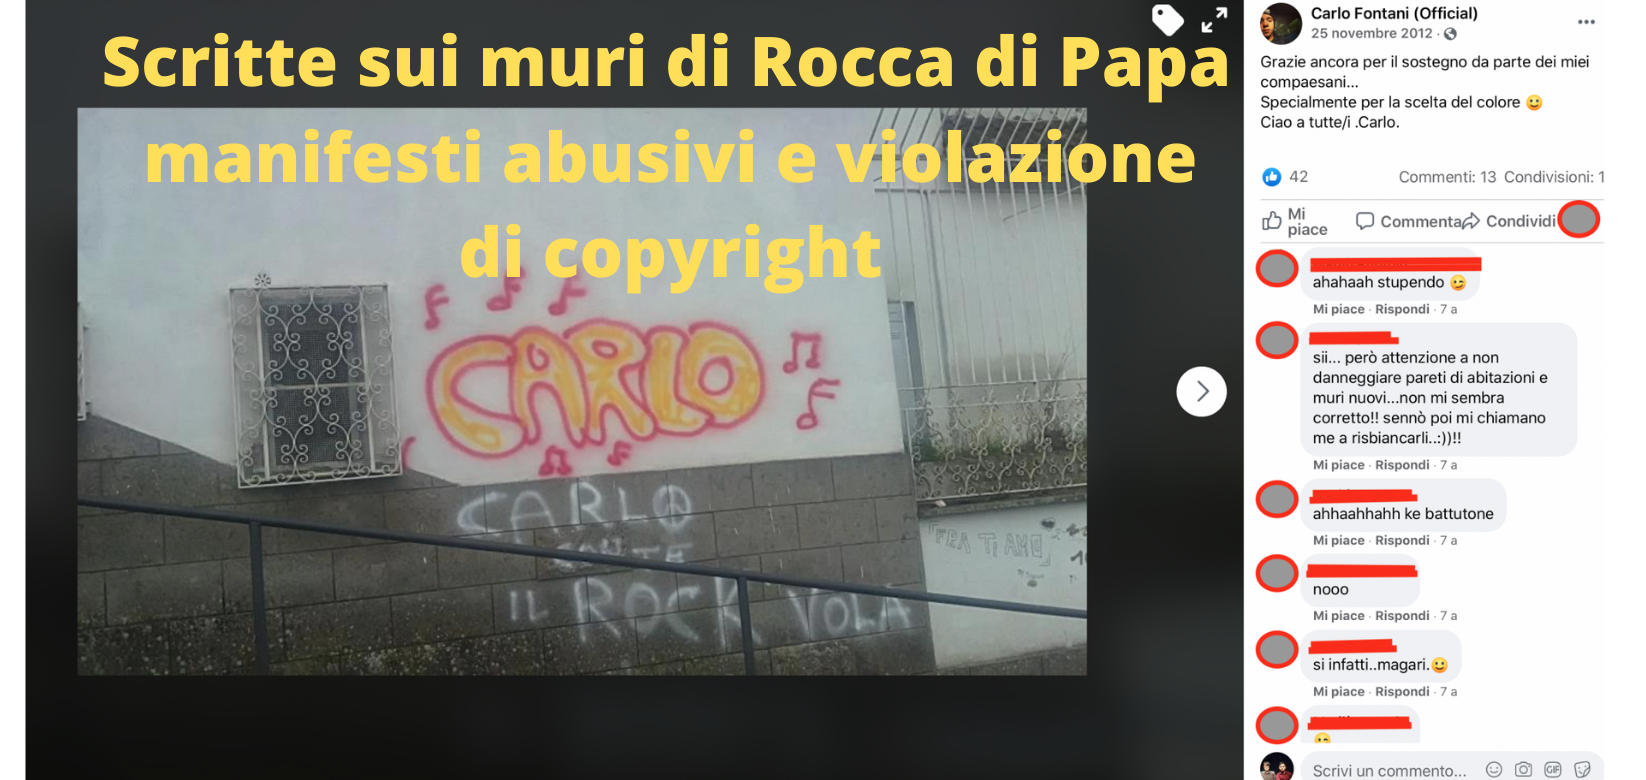 Scritte sui muri di Rocca di Papa manifesti abusivi e violazione di copyright